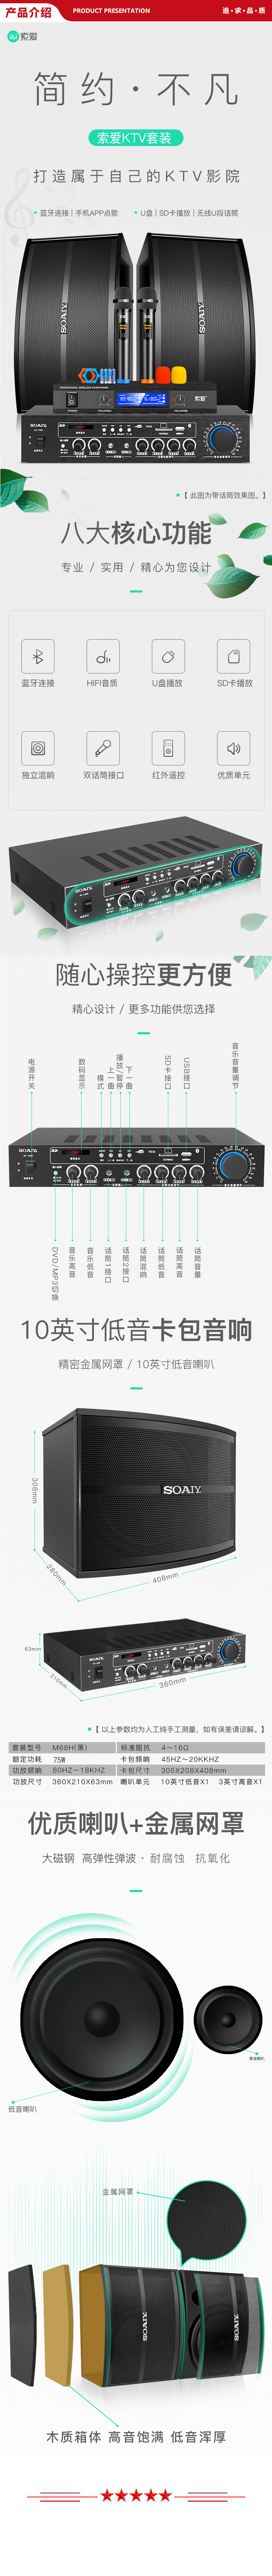 索爱 soaiy CK-M68 H款套装 专业功放机蓝牙音箱 10英寸家庭影院KTV音响套装 家用商用会议设备 .jpg